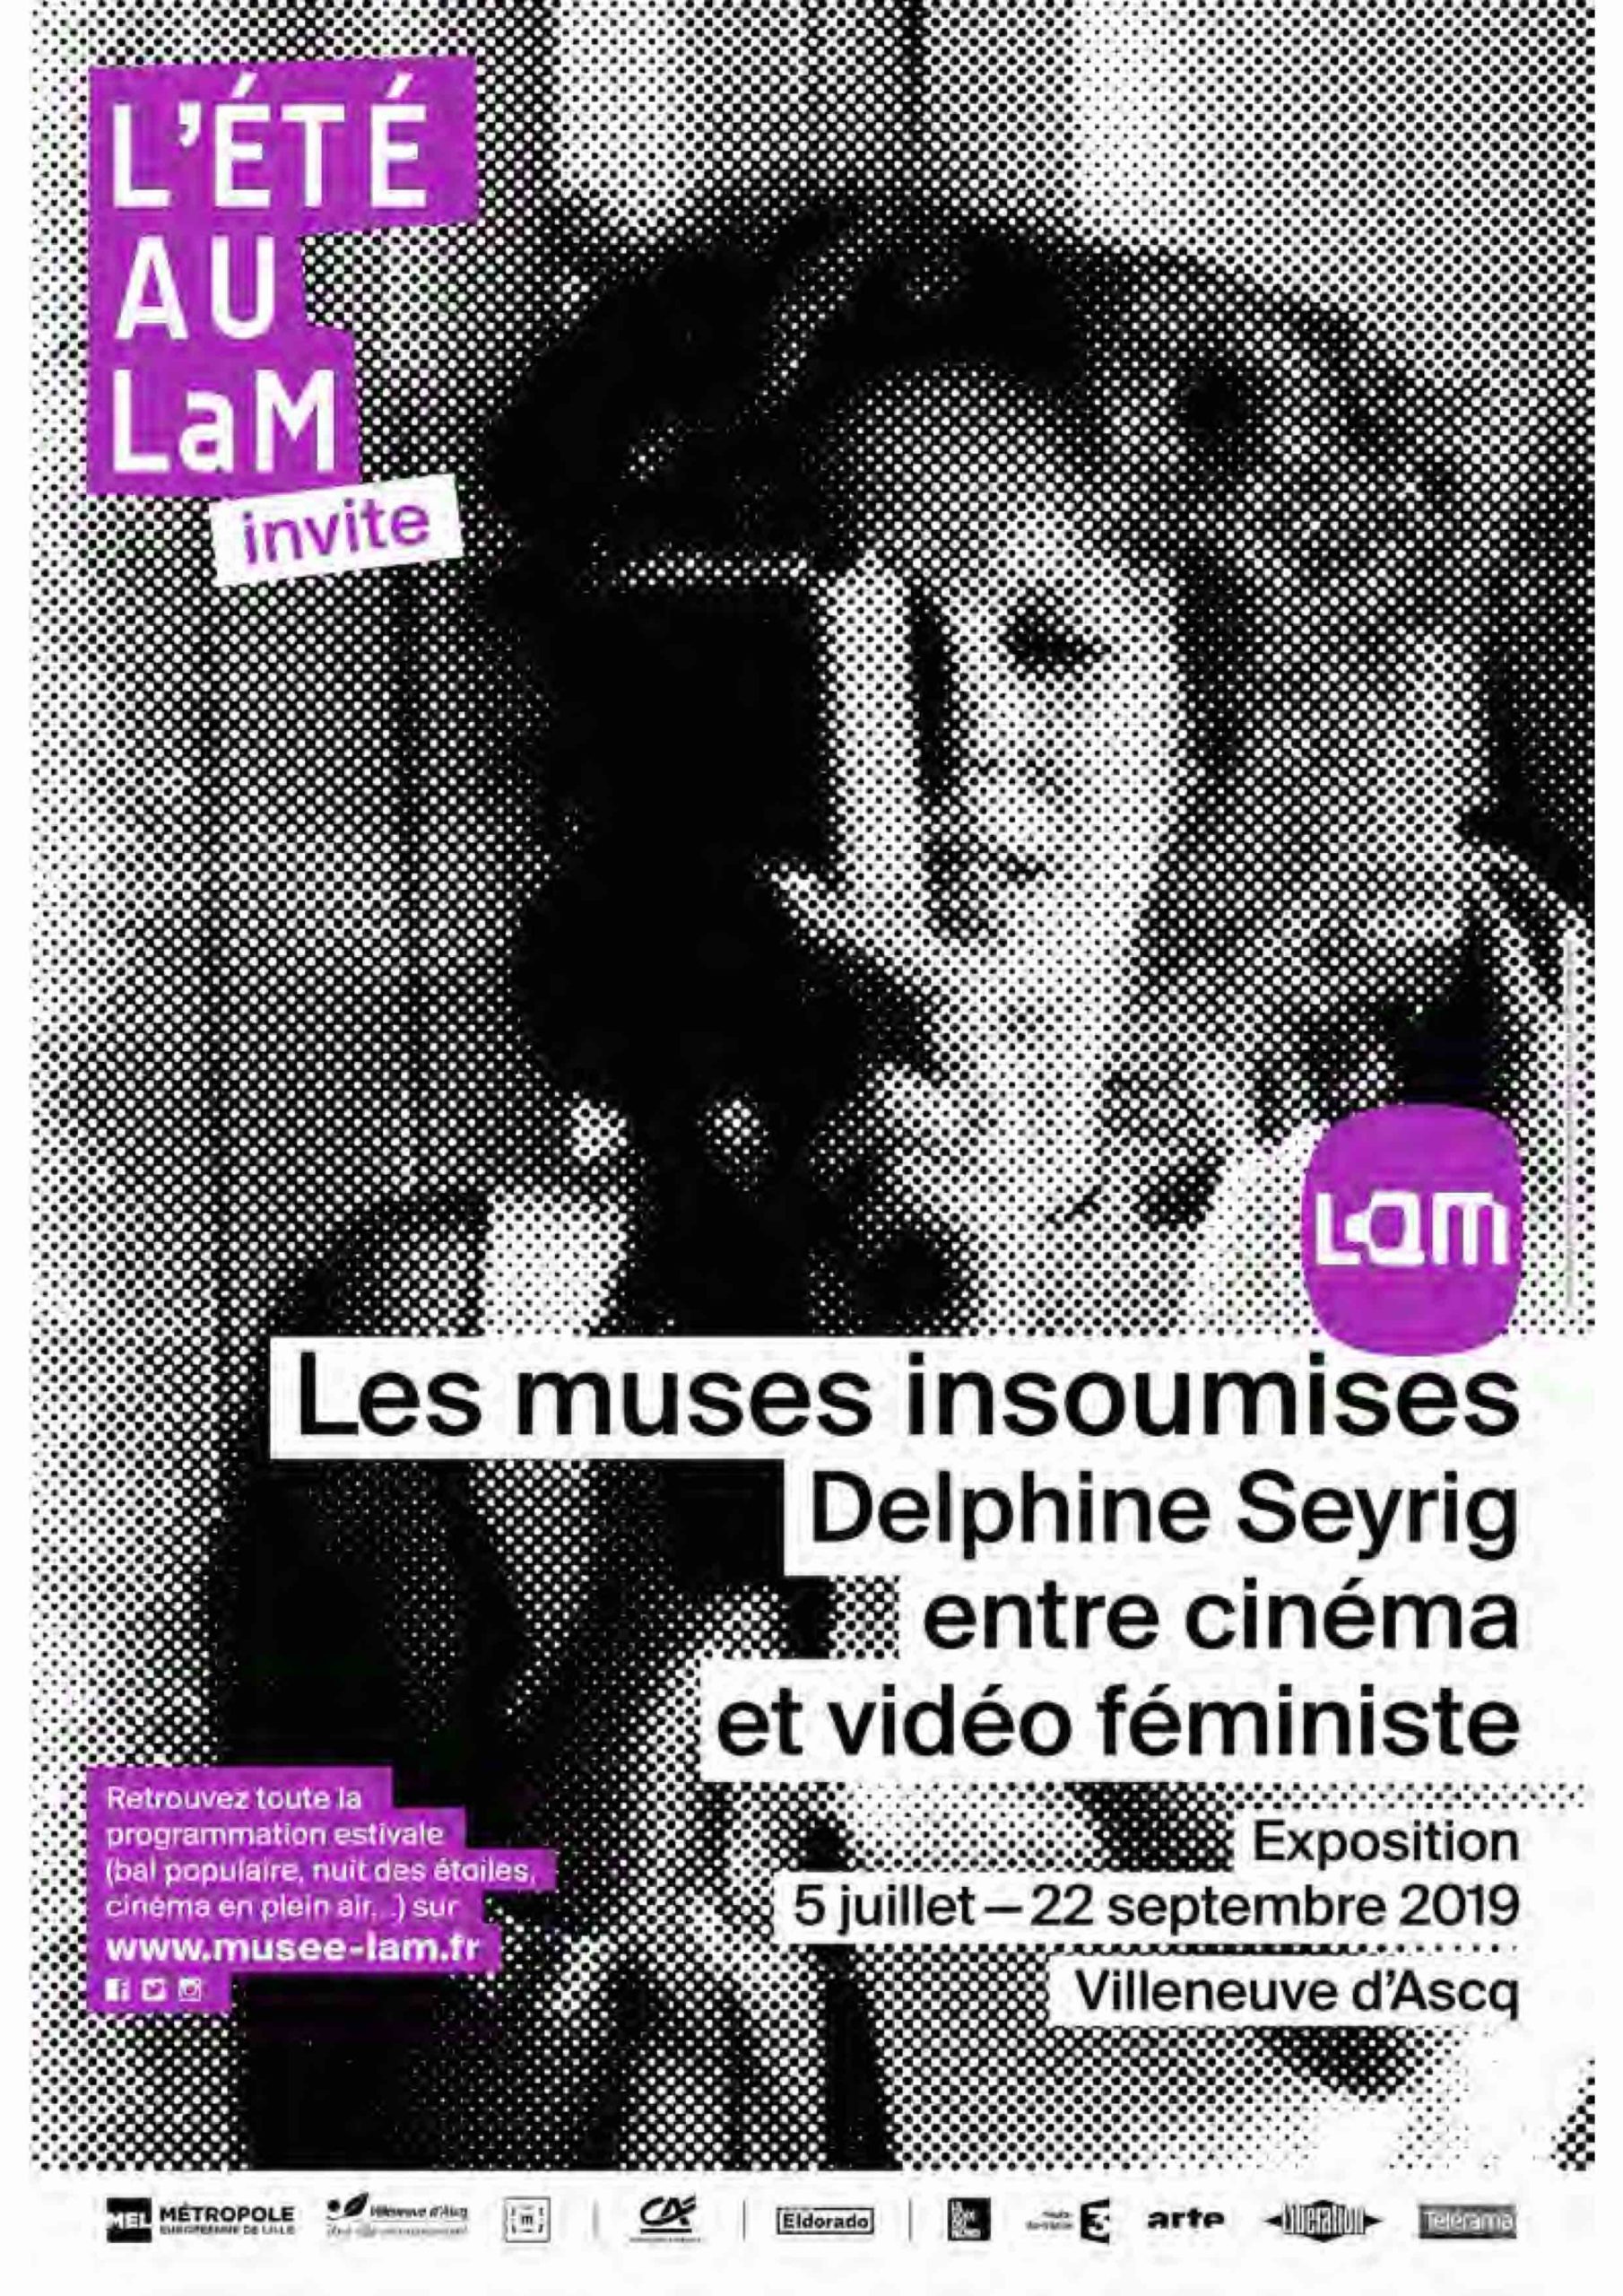 4 juillet 2019 Vernissage 5 juillet ouverture de l’exposition « Les muses insoumises. Delphine Seyrig entre cinéma et vidéo féministe »